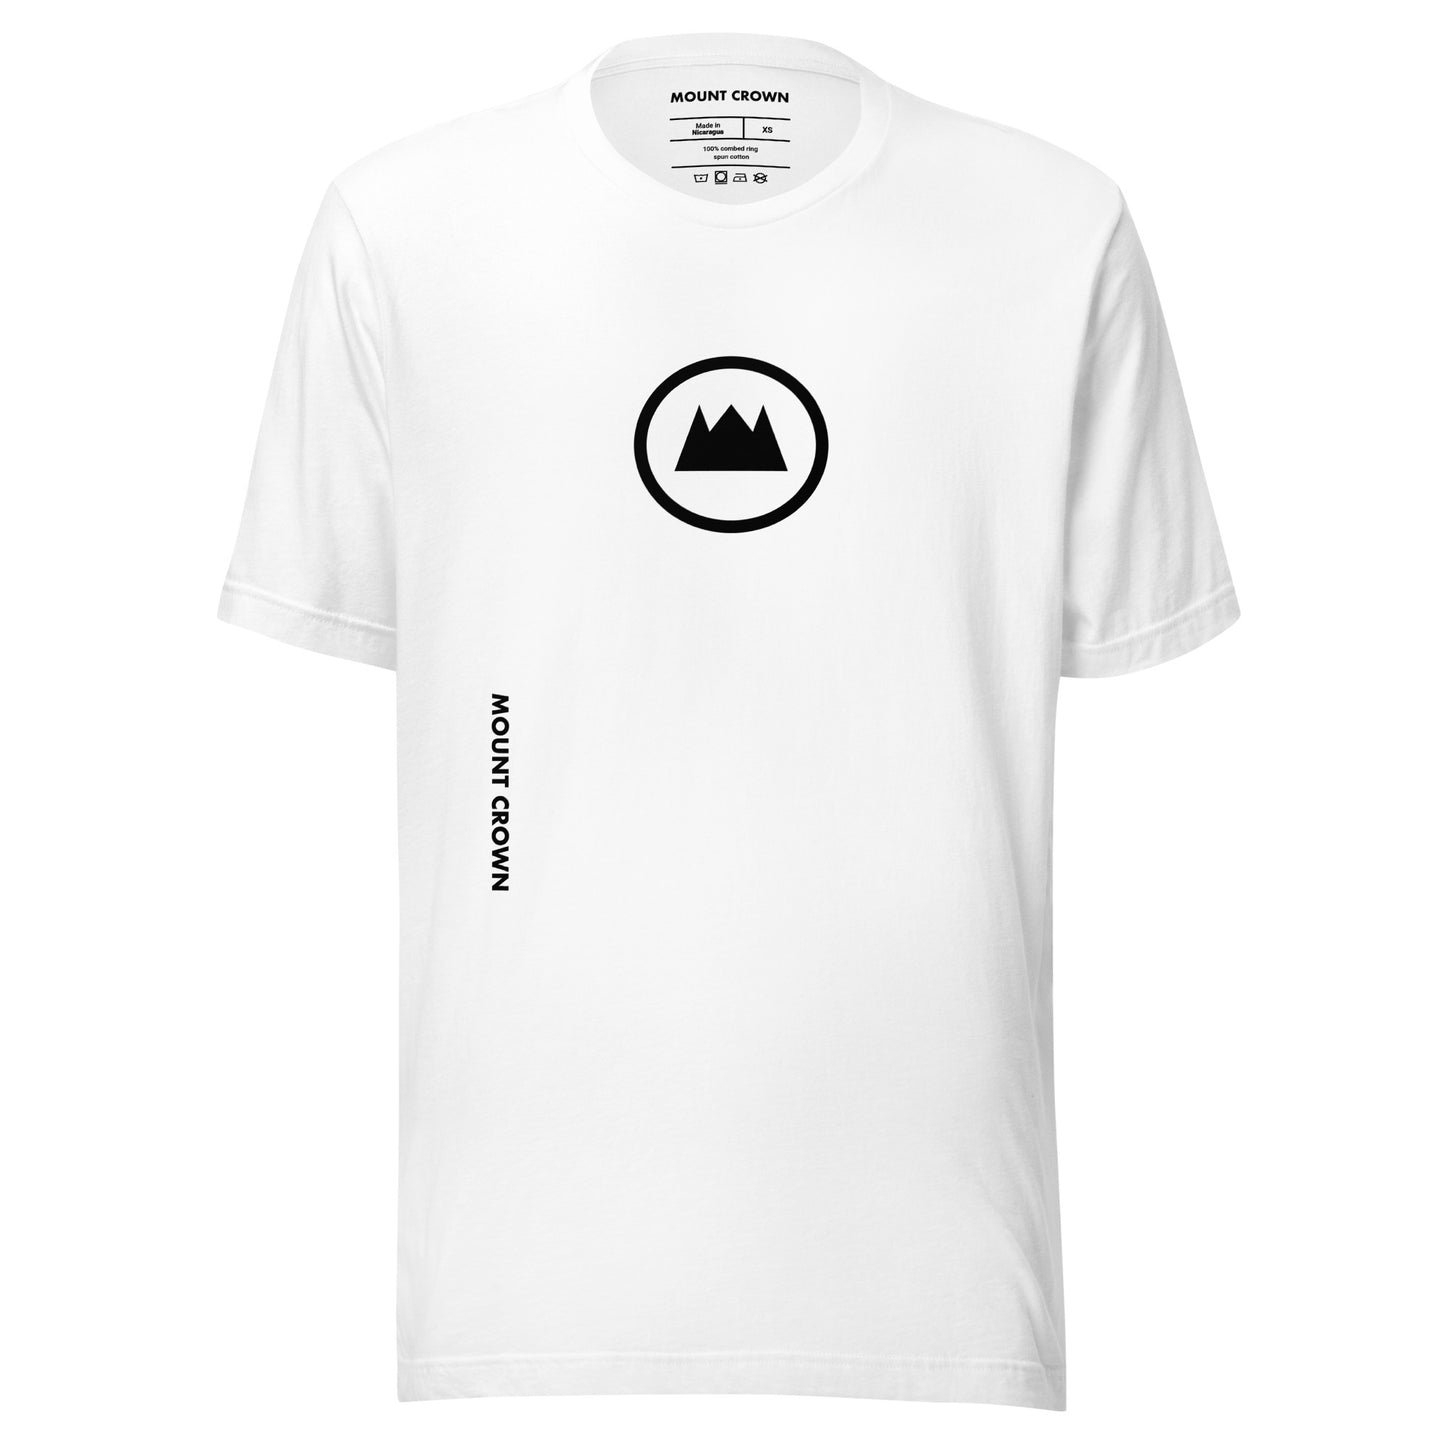 MOUNT CROWN (Blk) Unisex T-shirt